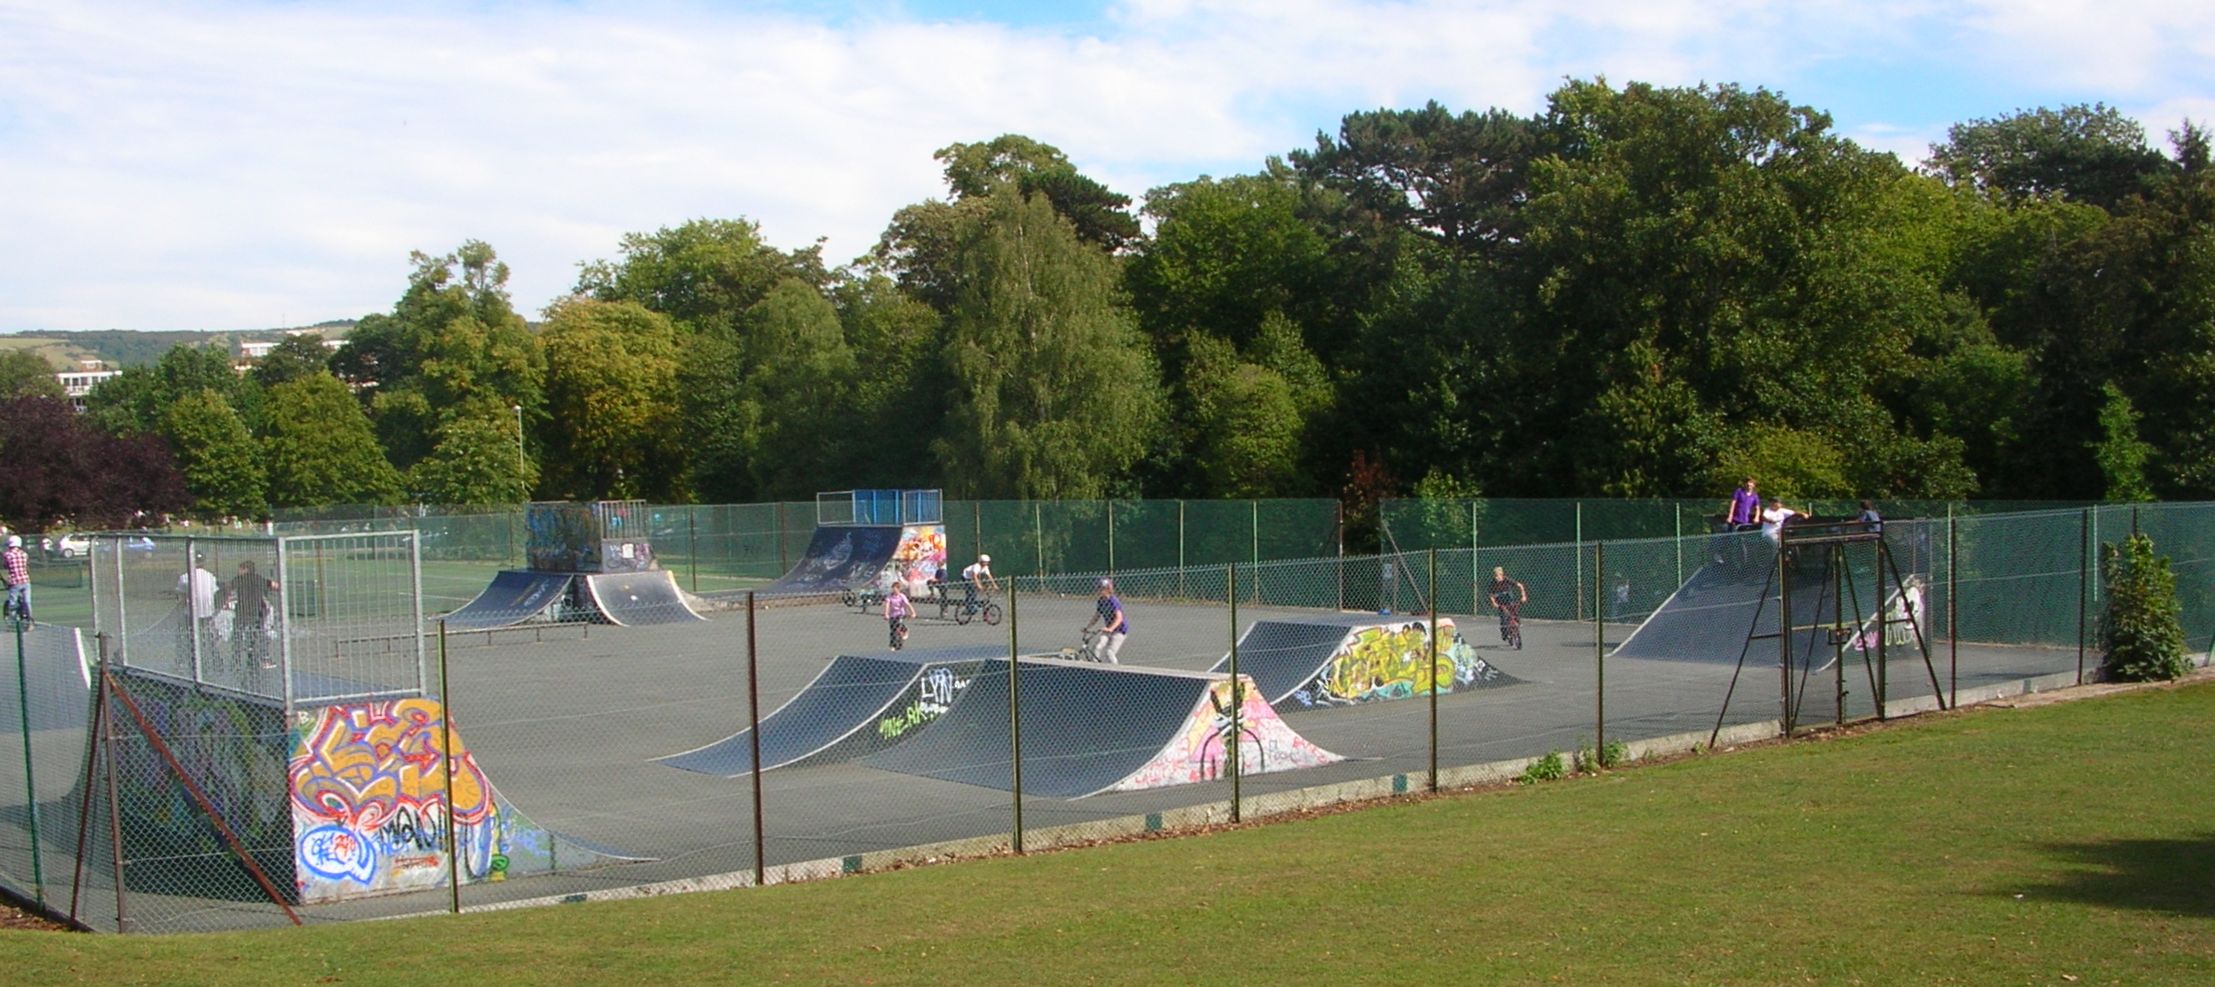 pittville skatepark cheltenham review tips skateboarding in gloucestershire u k